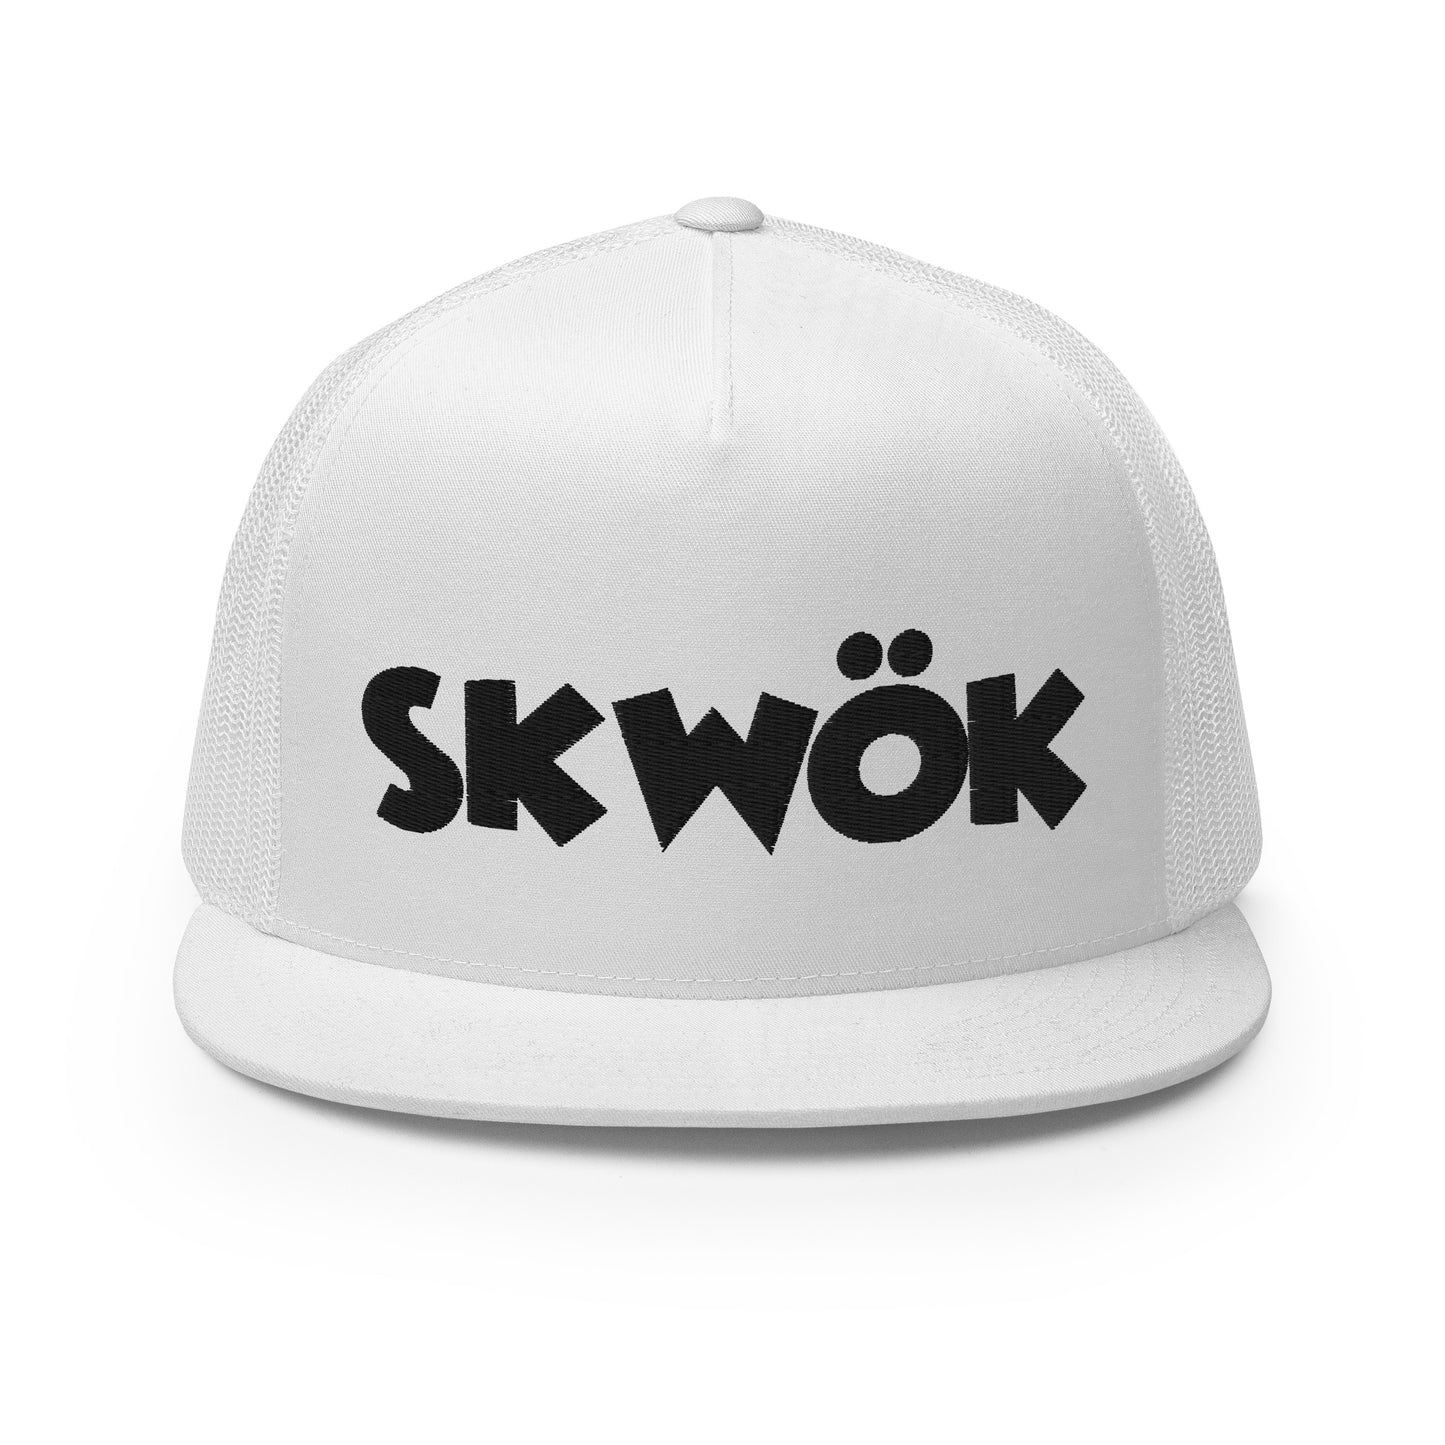 Skwok Brand / Hat / Trucker Cap / OG Logo / 3D Puff / White / Black